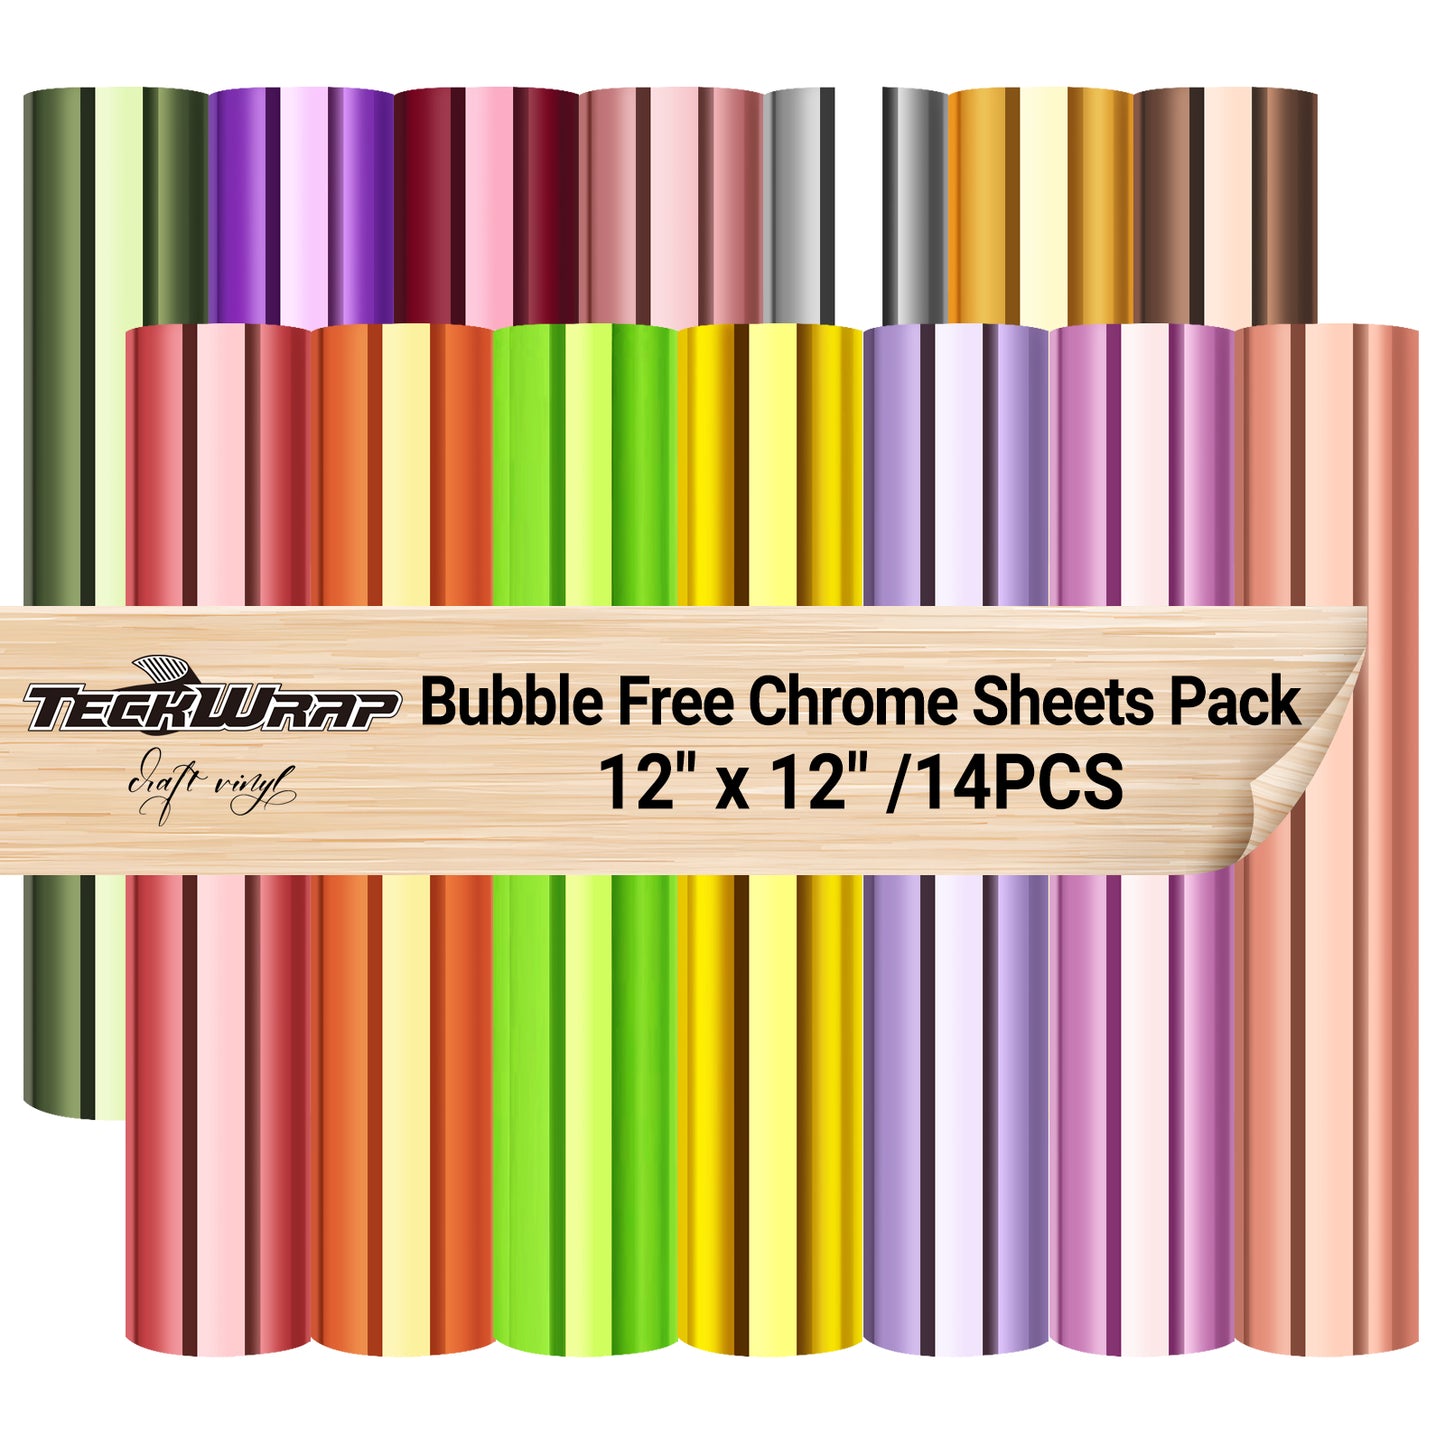 Bubble Free Mirror Chrome Sheets Pack( 14 PCS)